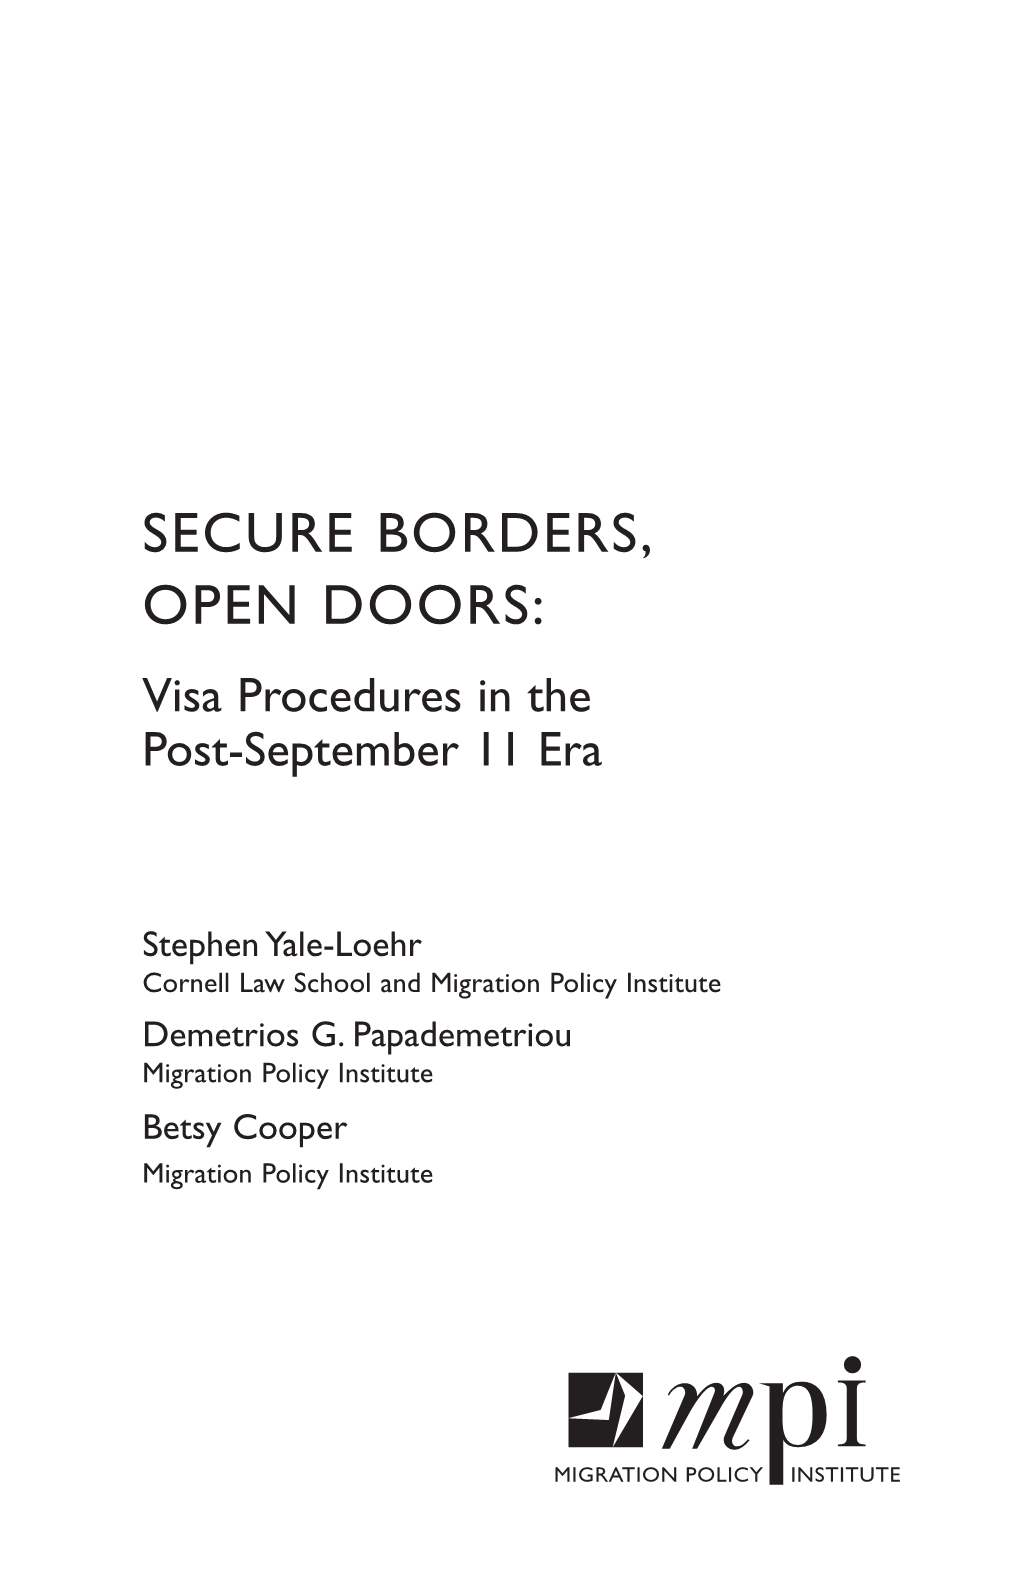 SECURE BORDERS, OPEN DOORS: Visa Procedures in the Post-September 11 Era